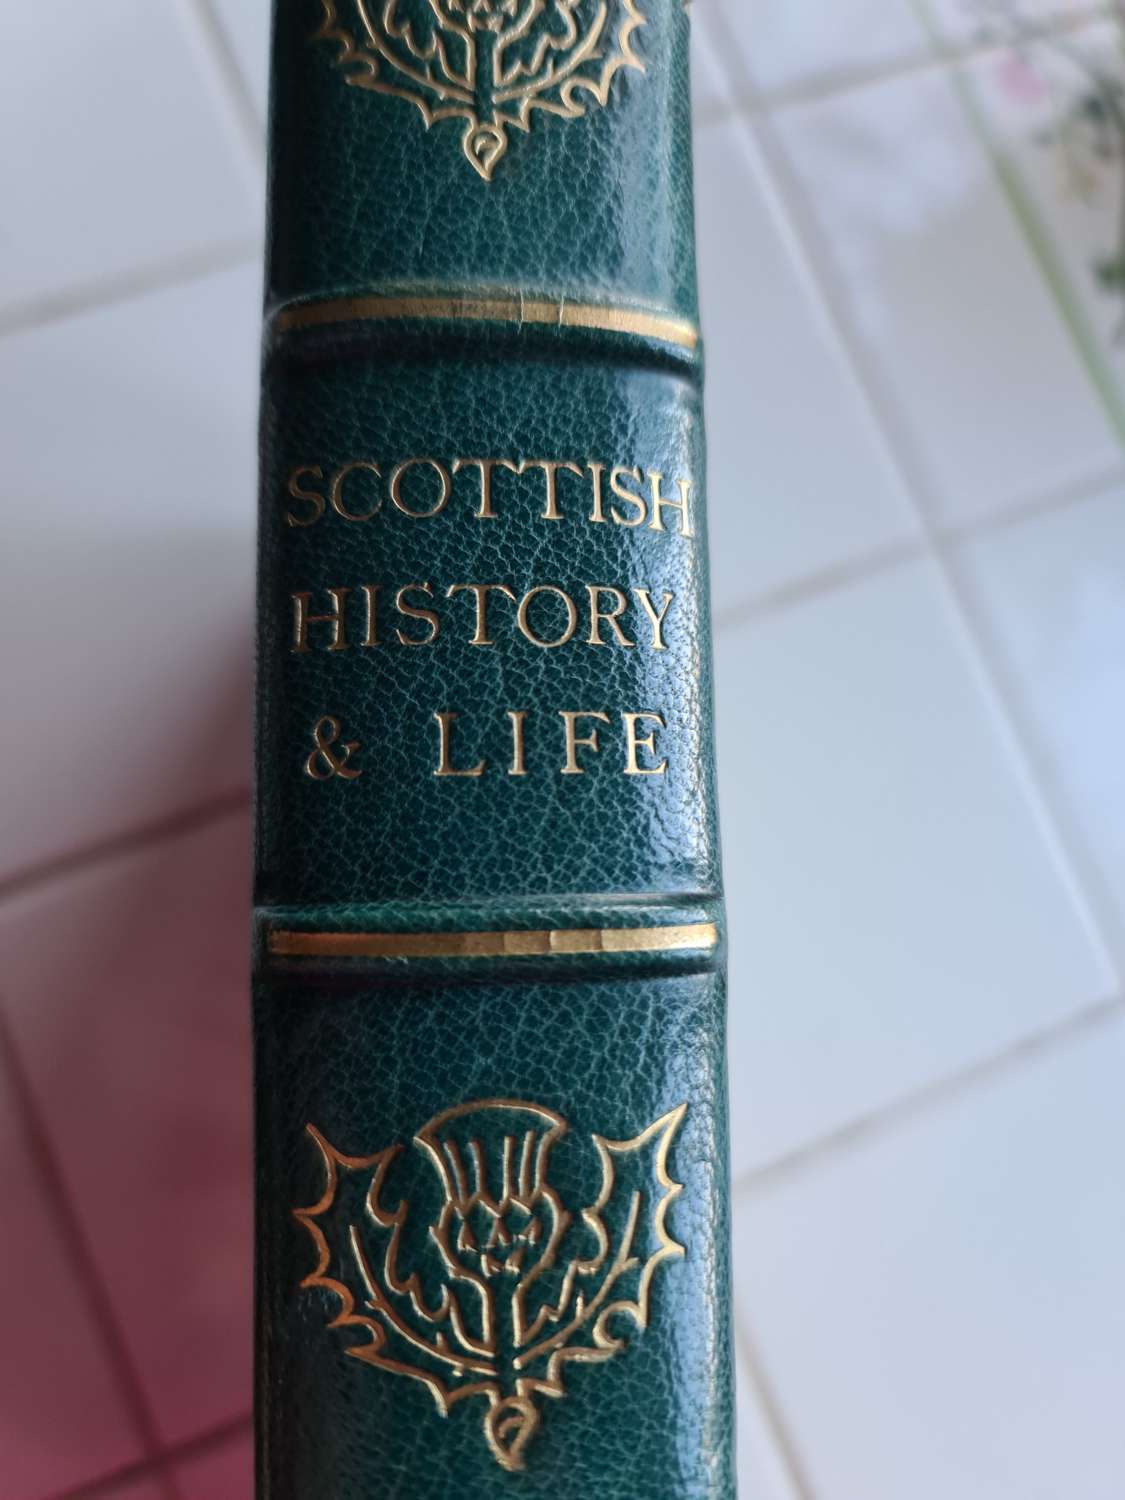 Scottish History & Life - Published 1902